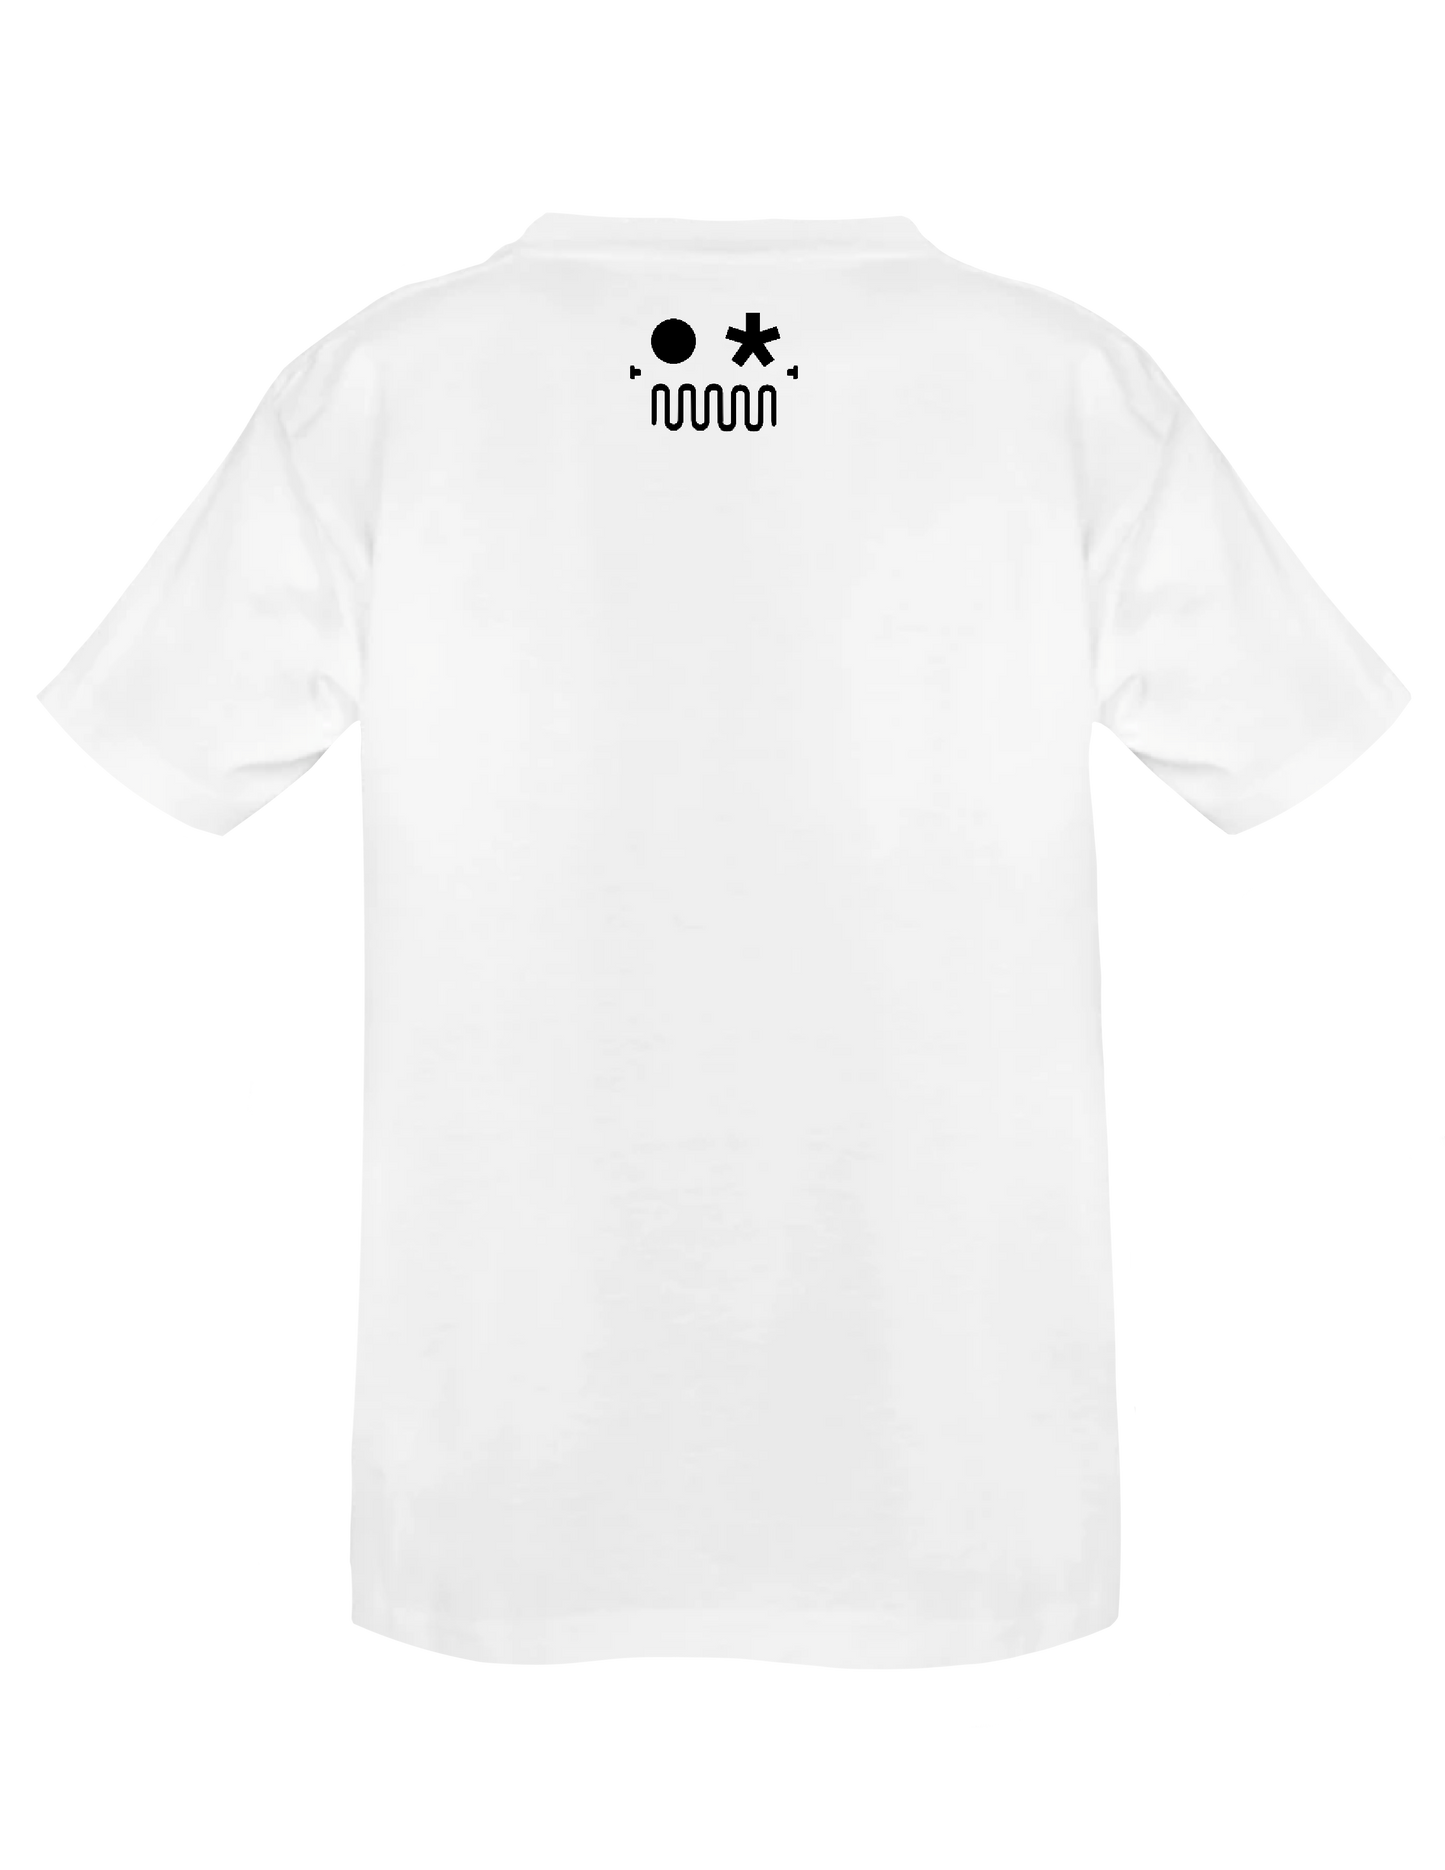 VANIER* // OTTAWA (White) - T-Shirt by BOYSDONTDRAW